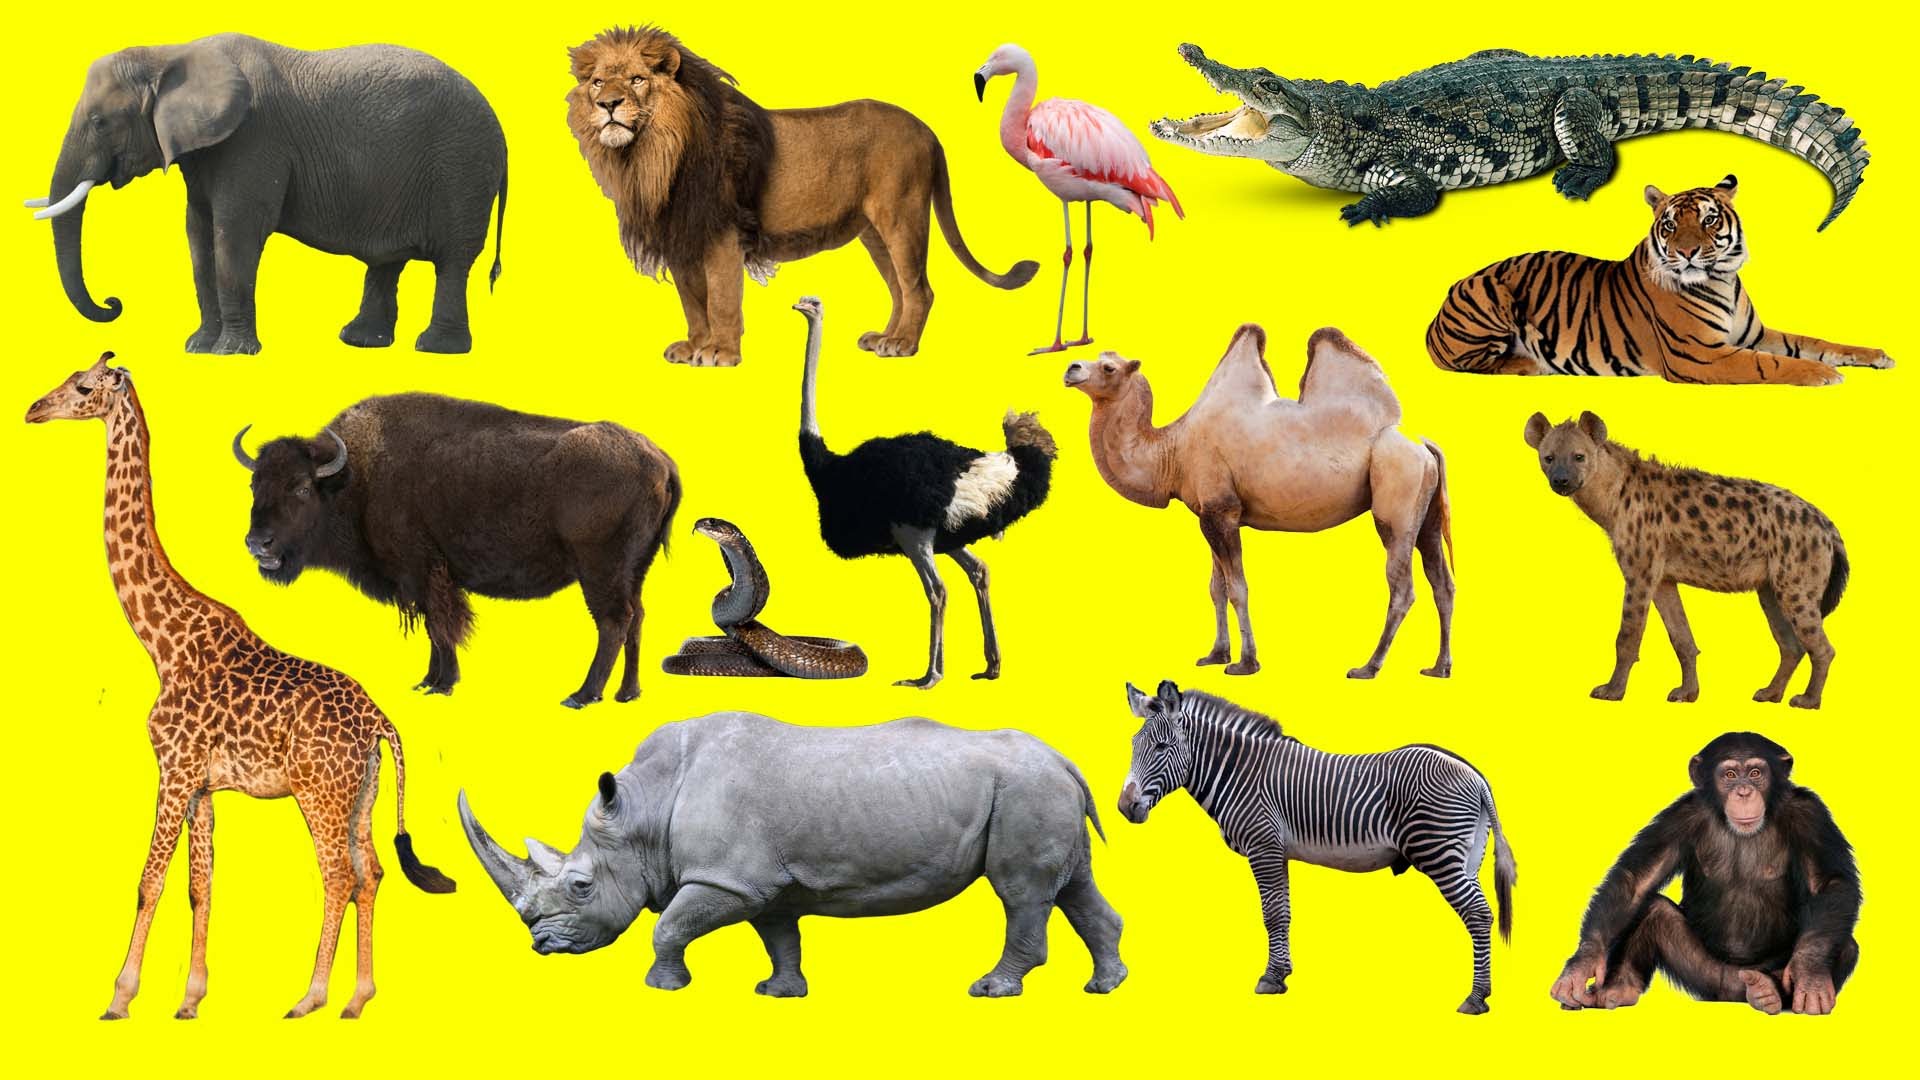 Animal 1 животное. Животные Африки. Африканские животные для детей. Дикие животные Африки. Животные Африки дл ядетй.